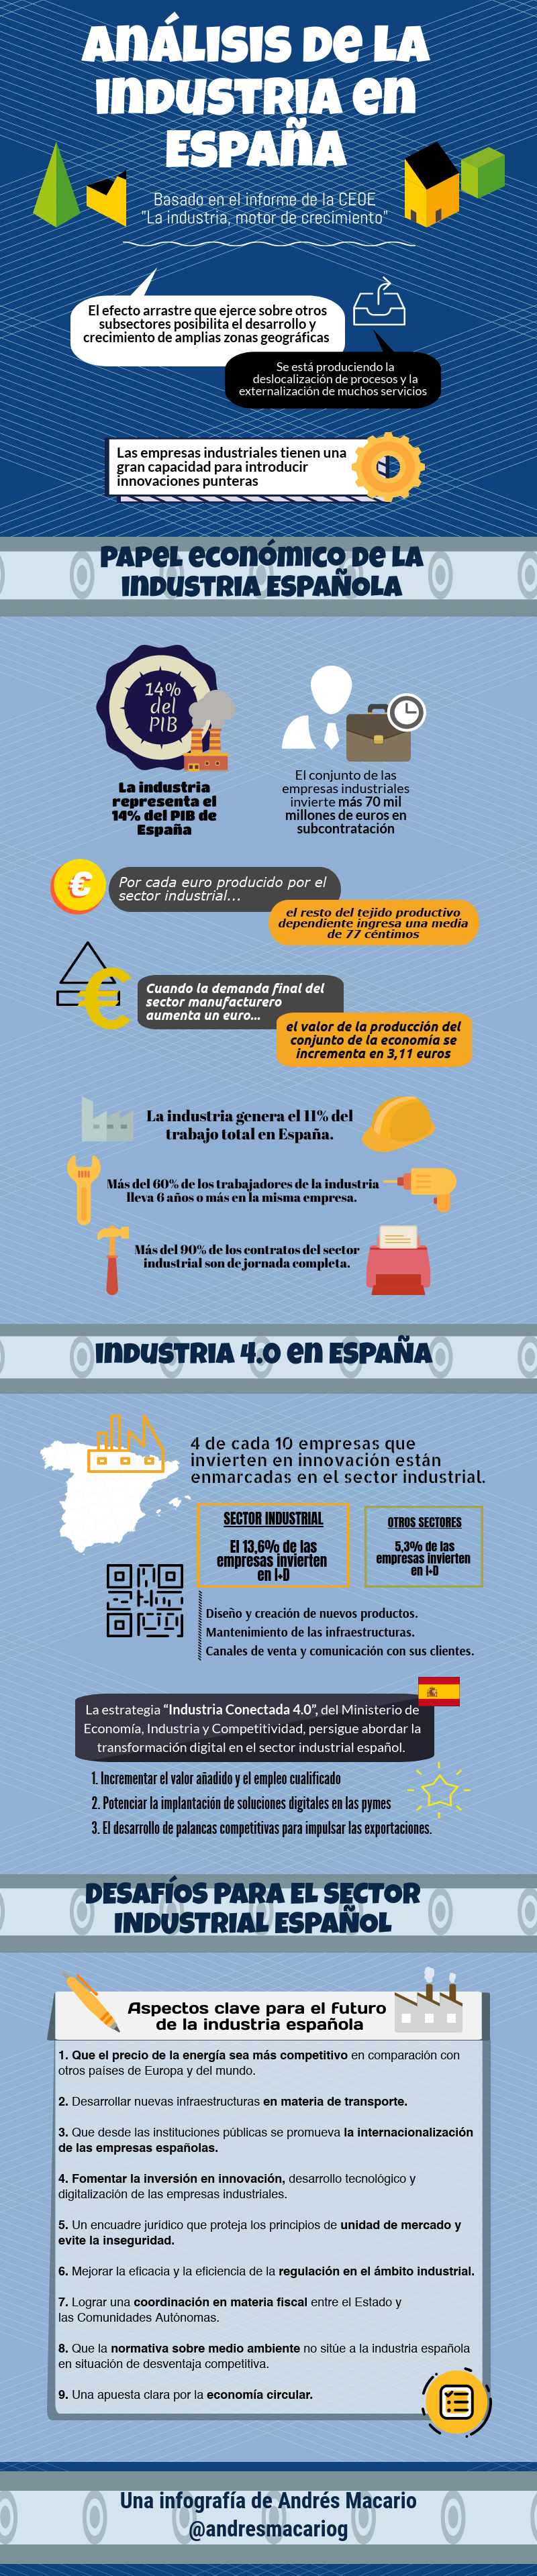 Análisis de la industria en España - Infografía de Andrés Macario